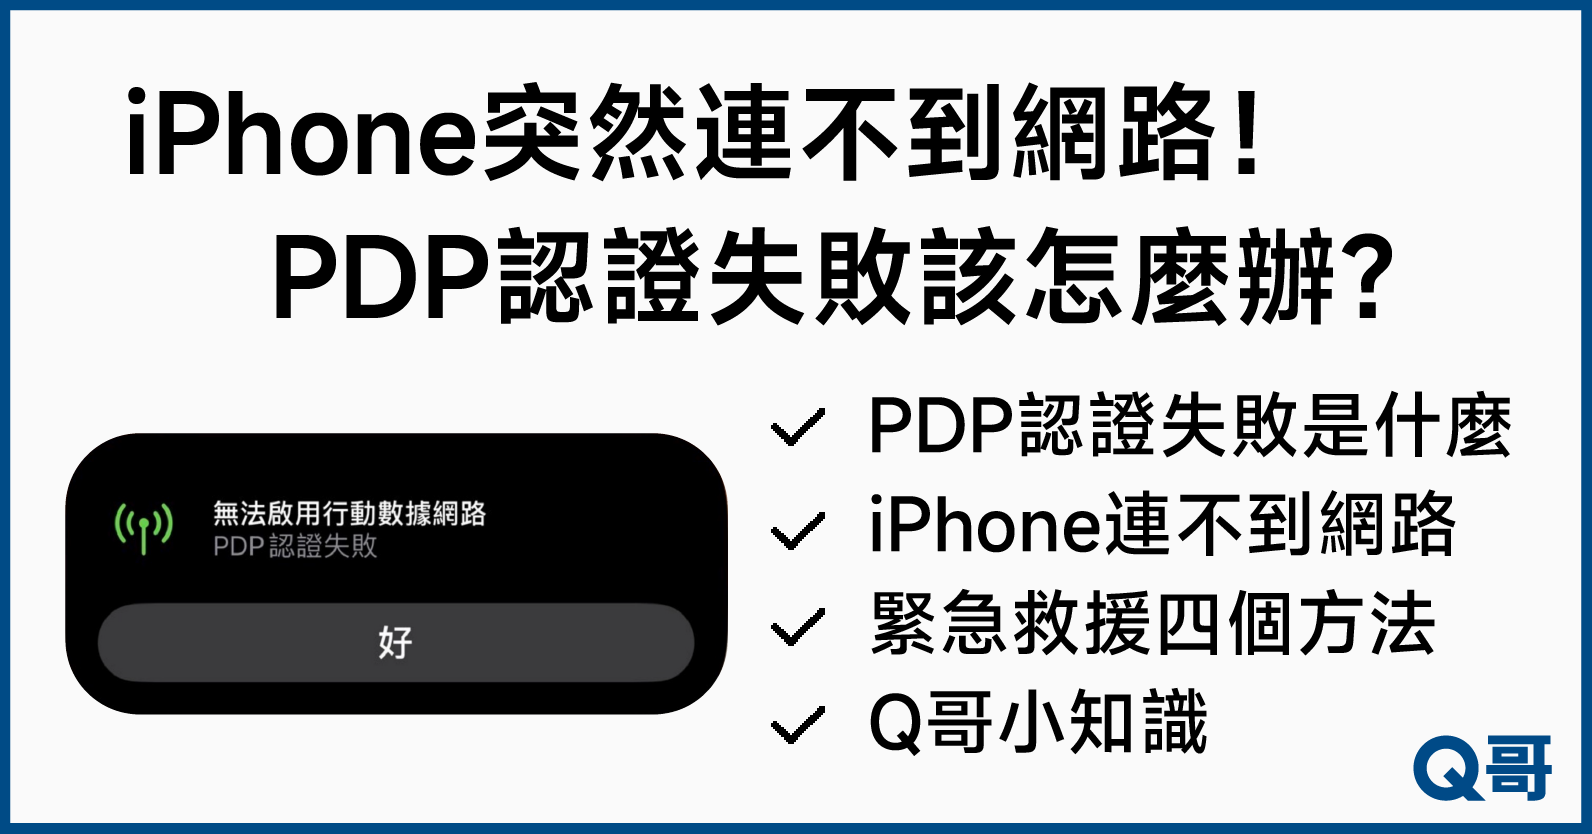 PDP認證失敗,iPhone網路不能用